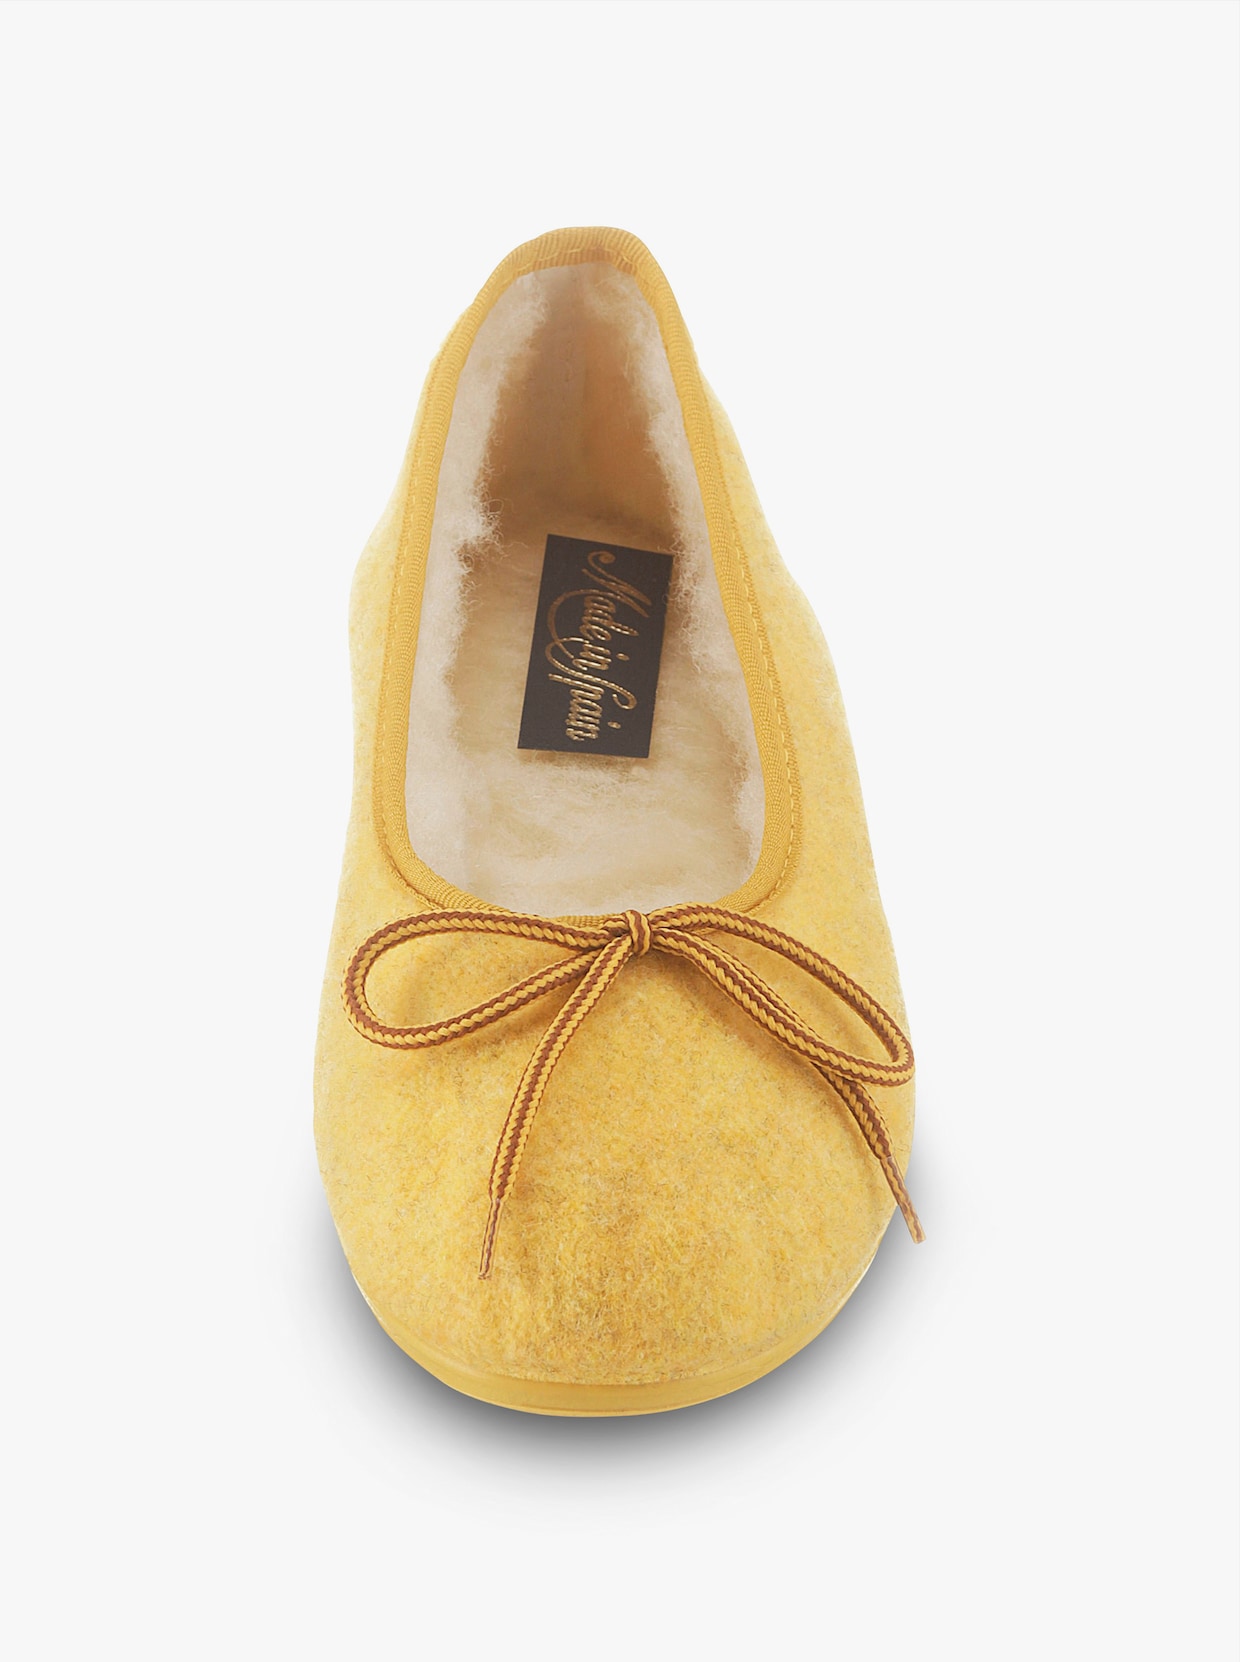 Domácí obuv - žlutá